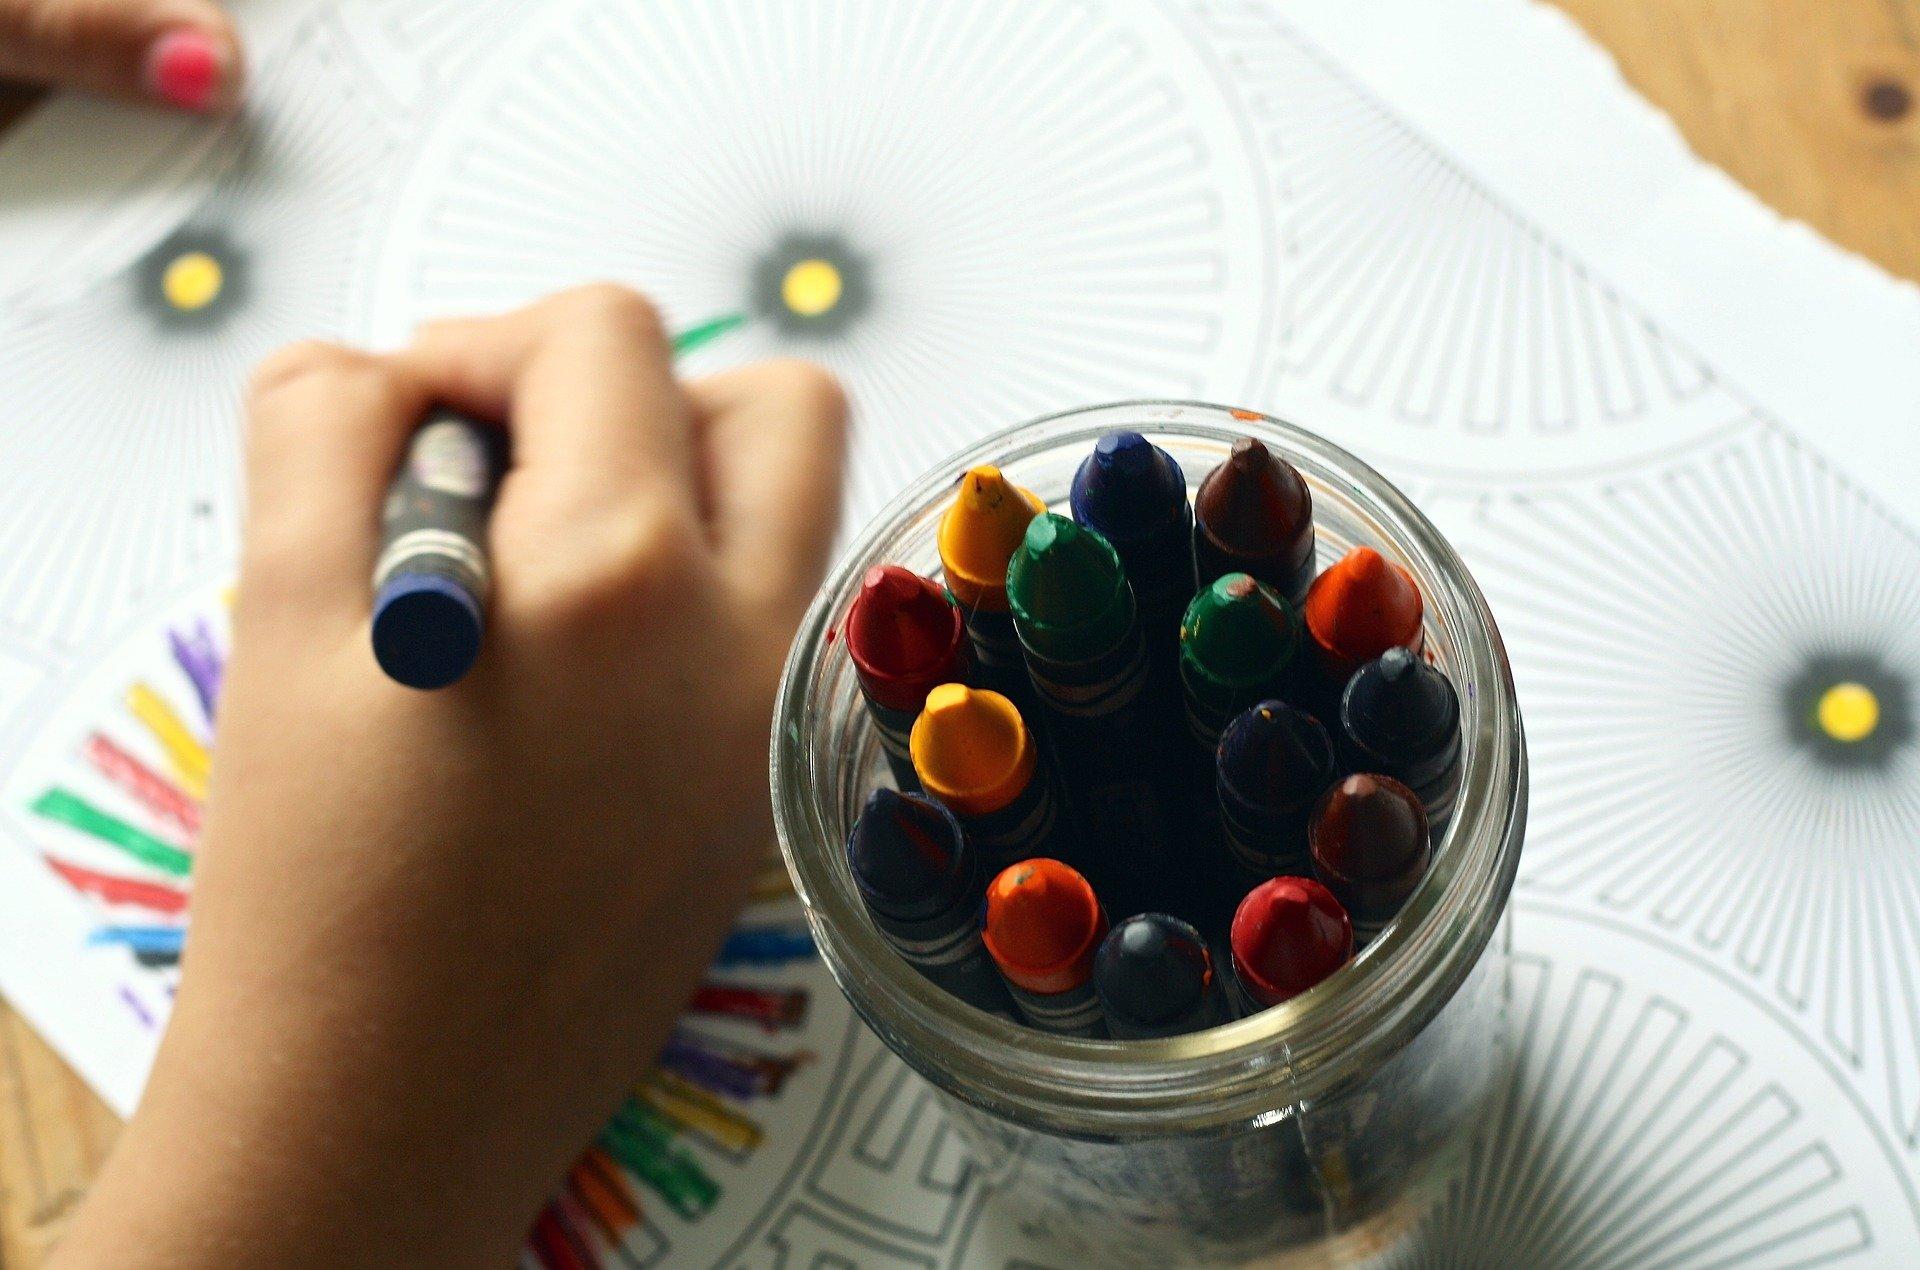 Na zdjęciu kredki świecowe w słoiczku oraz ręka dziecka rysująca nimi